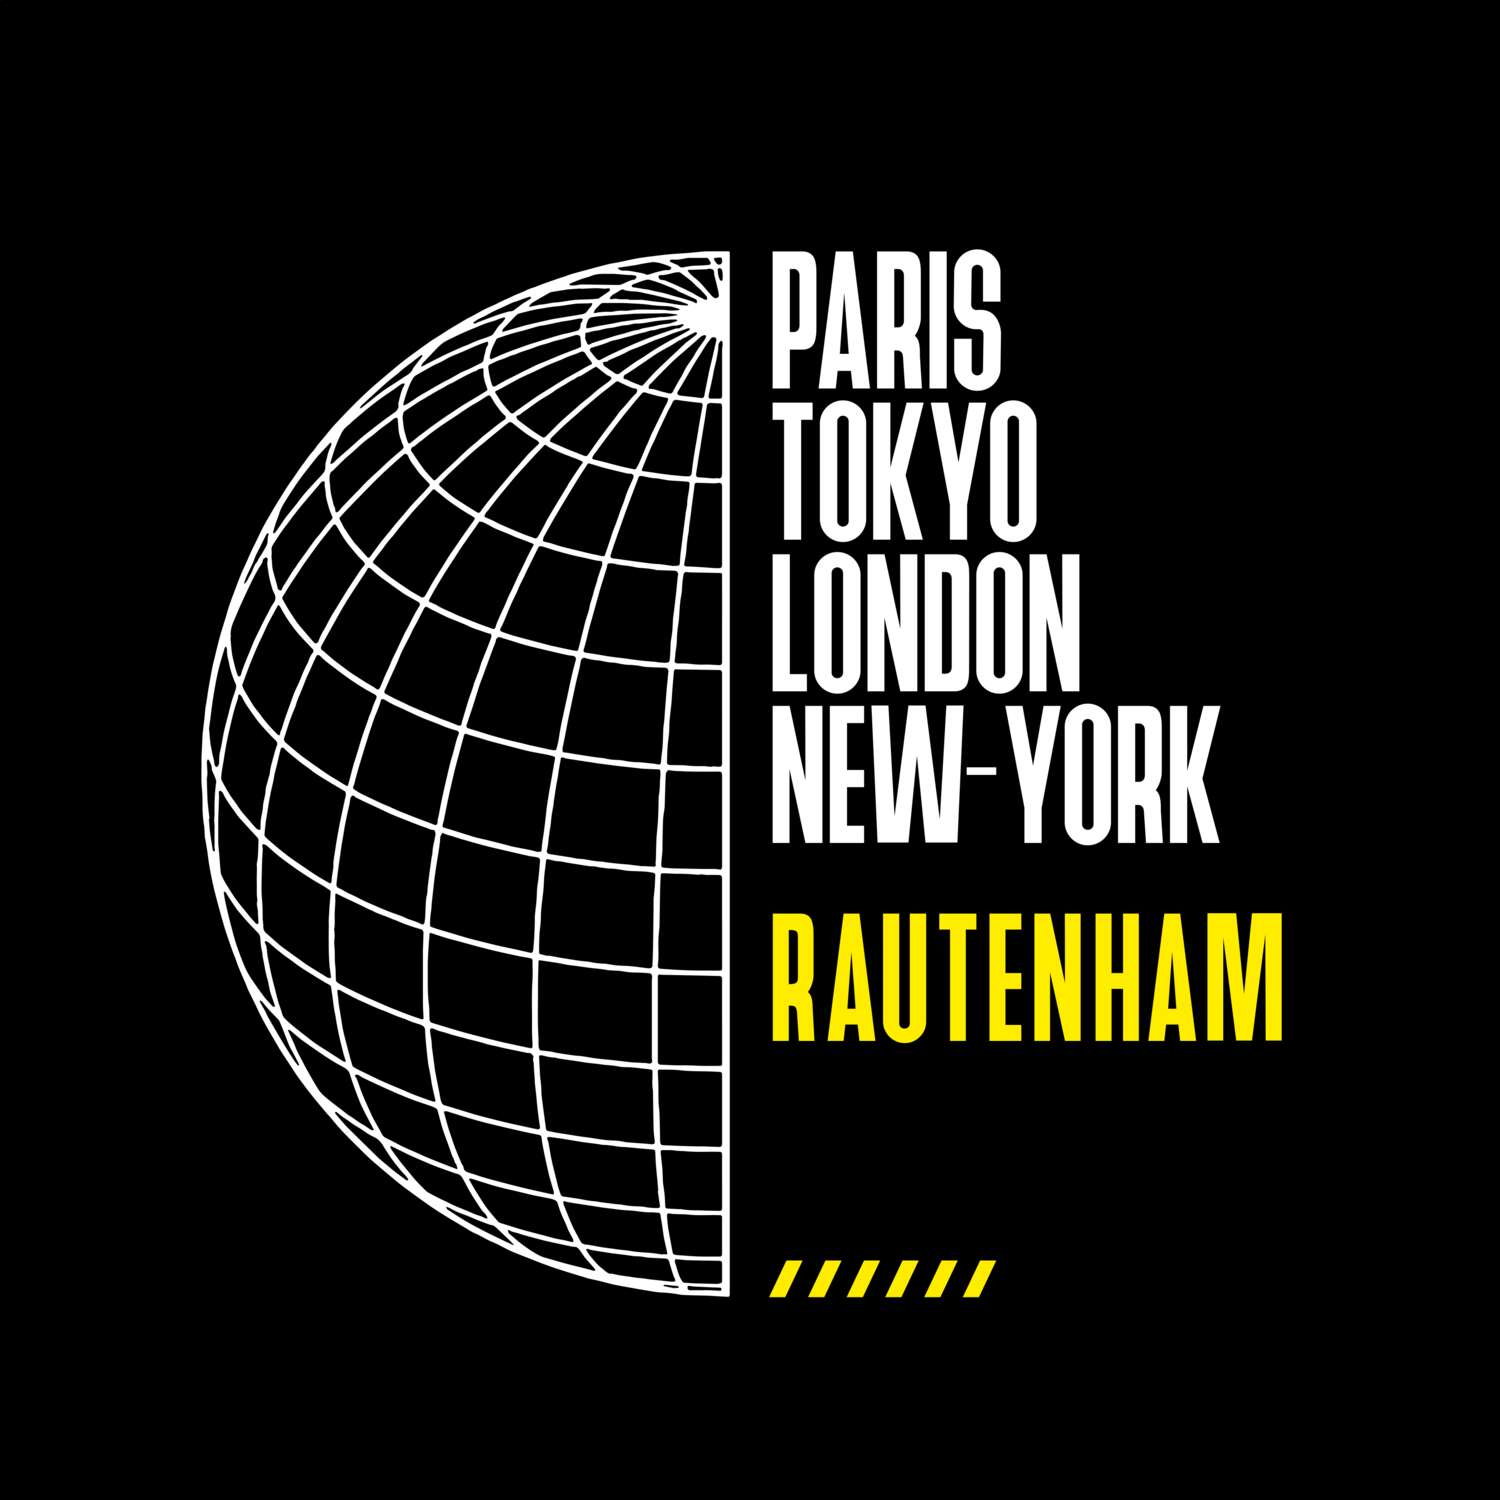 Rautenham T-Shirt »Paris Tokyo London«